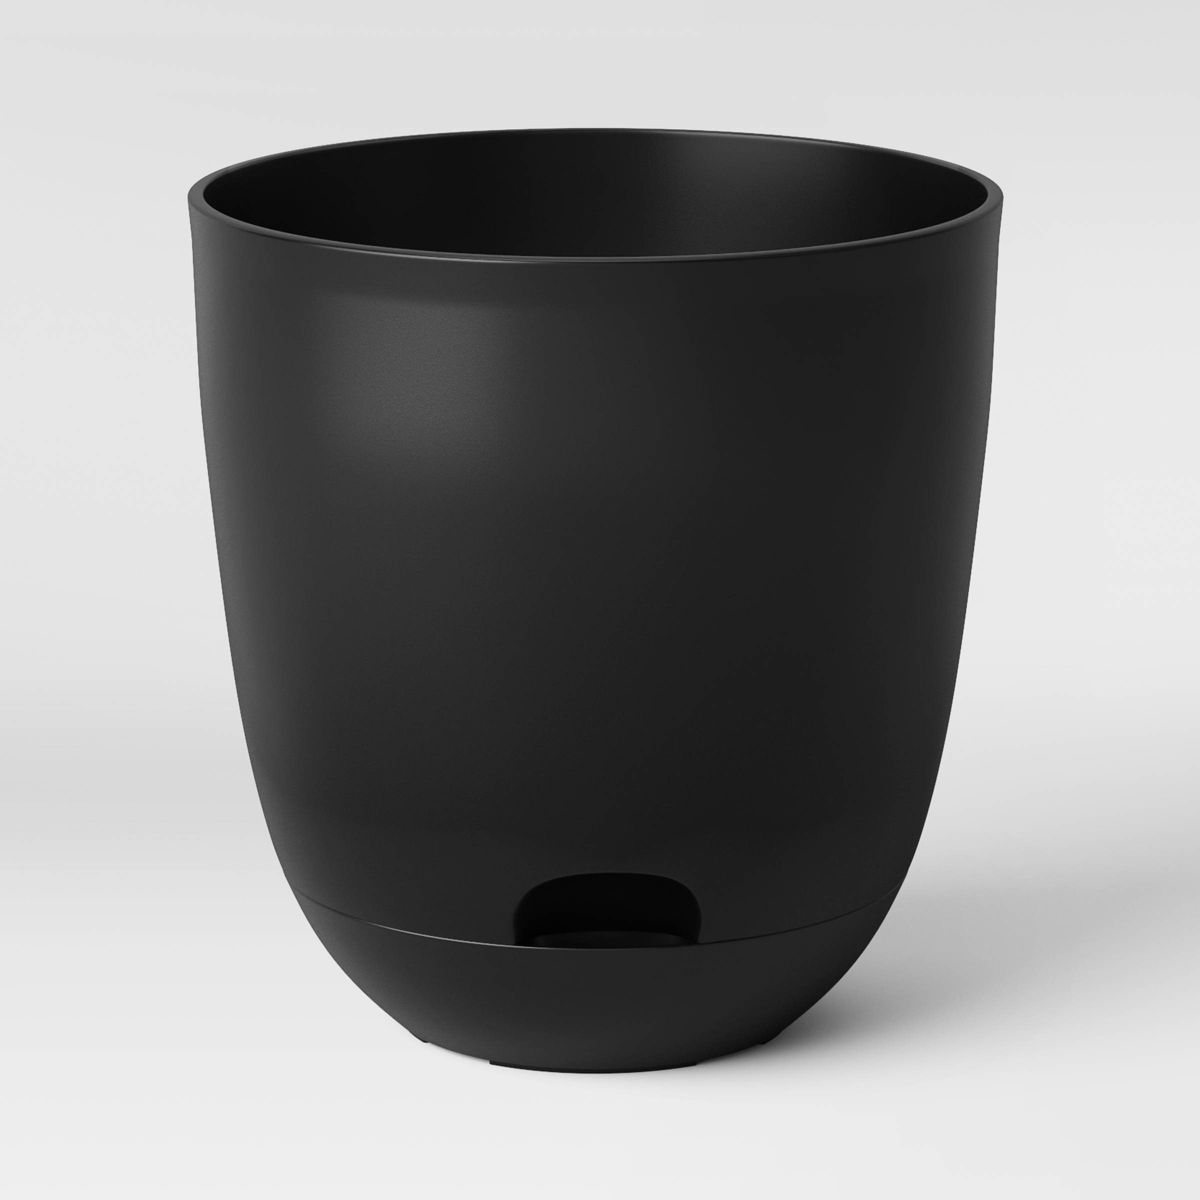 Self-Watering Plastic Indoor Outdoor Planter Pot Black 20"x20" - Room Essentials™ | Target